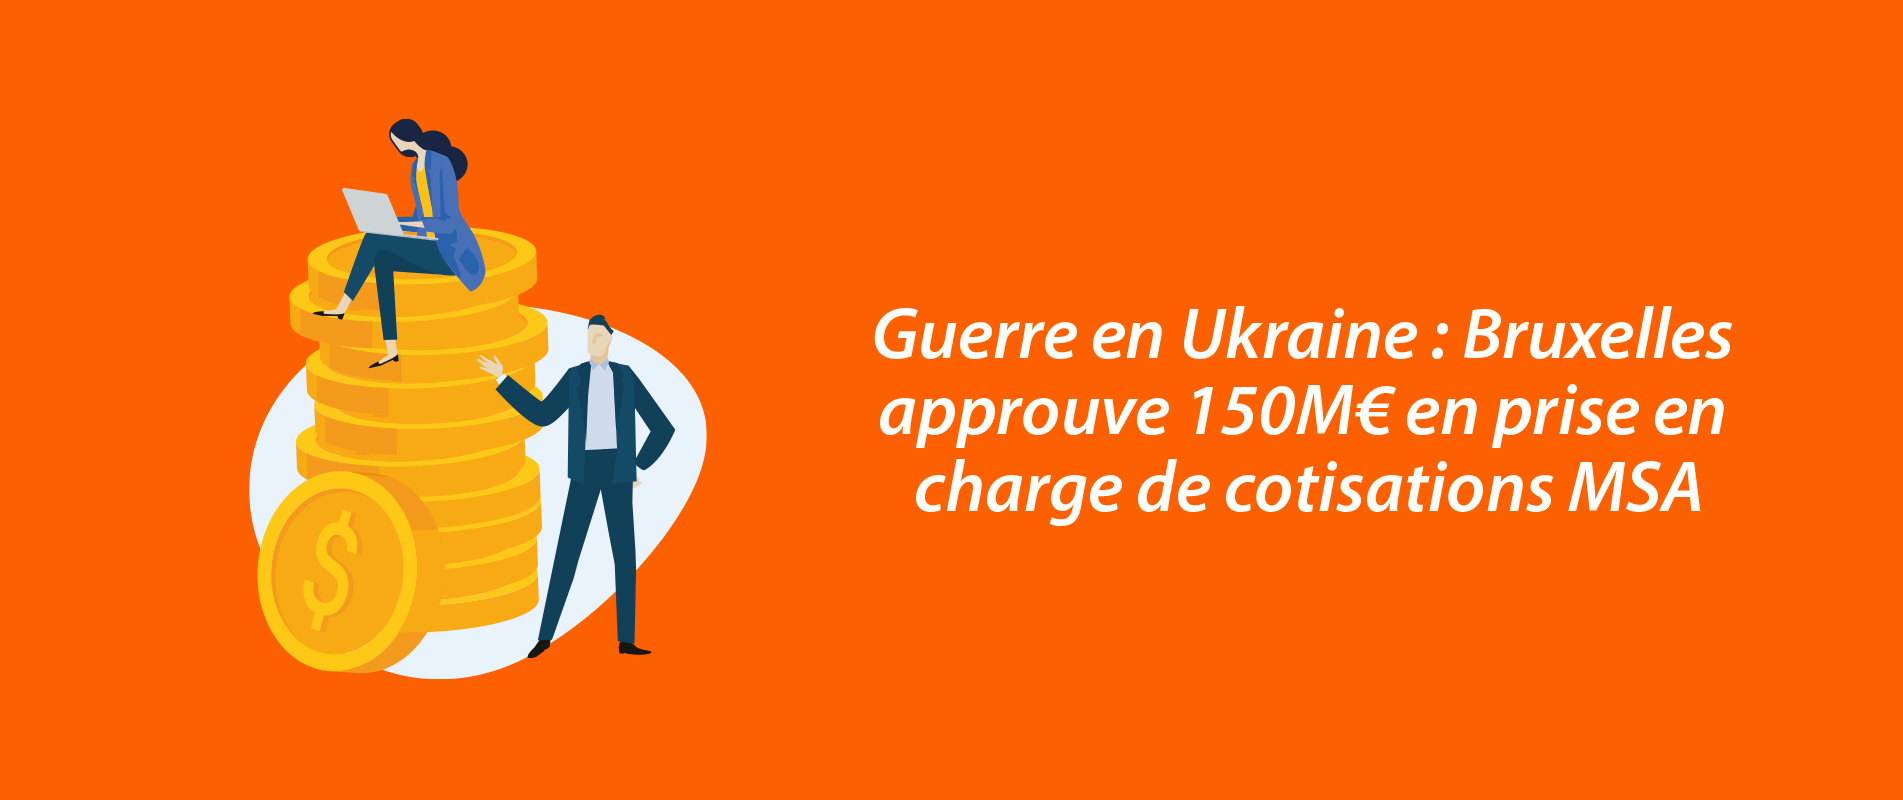 Guerre en Ukraine : Bruxelles approuve 150M€ en prise en charge de cotisations MSA